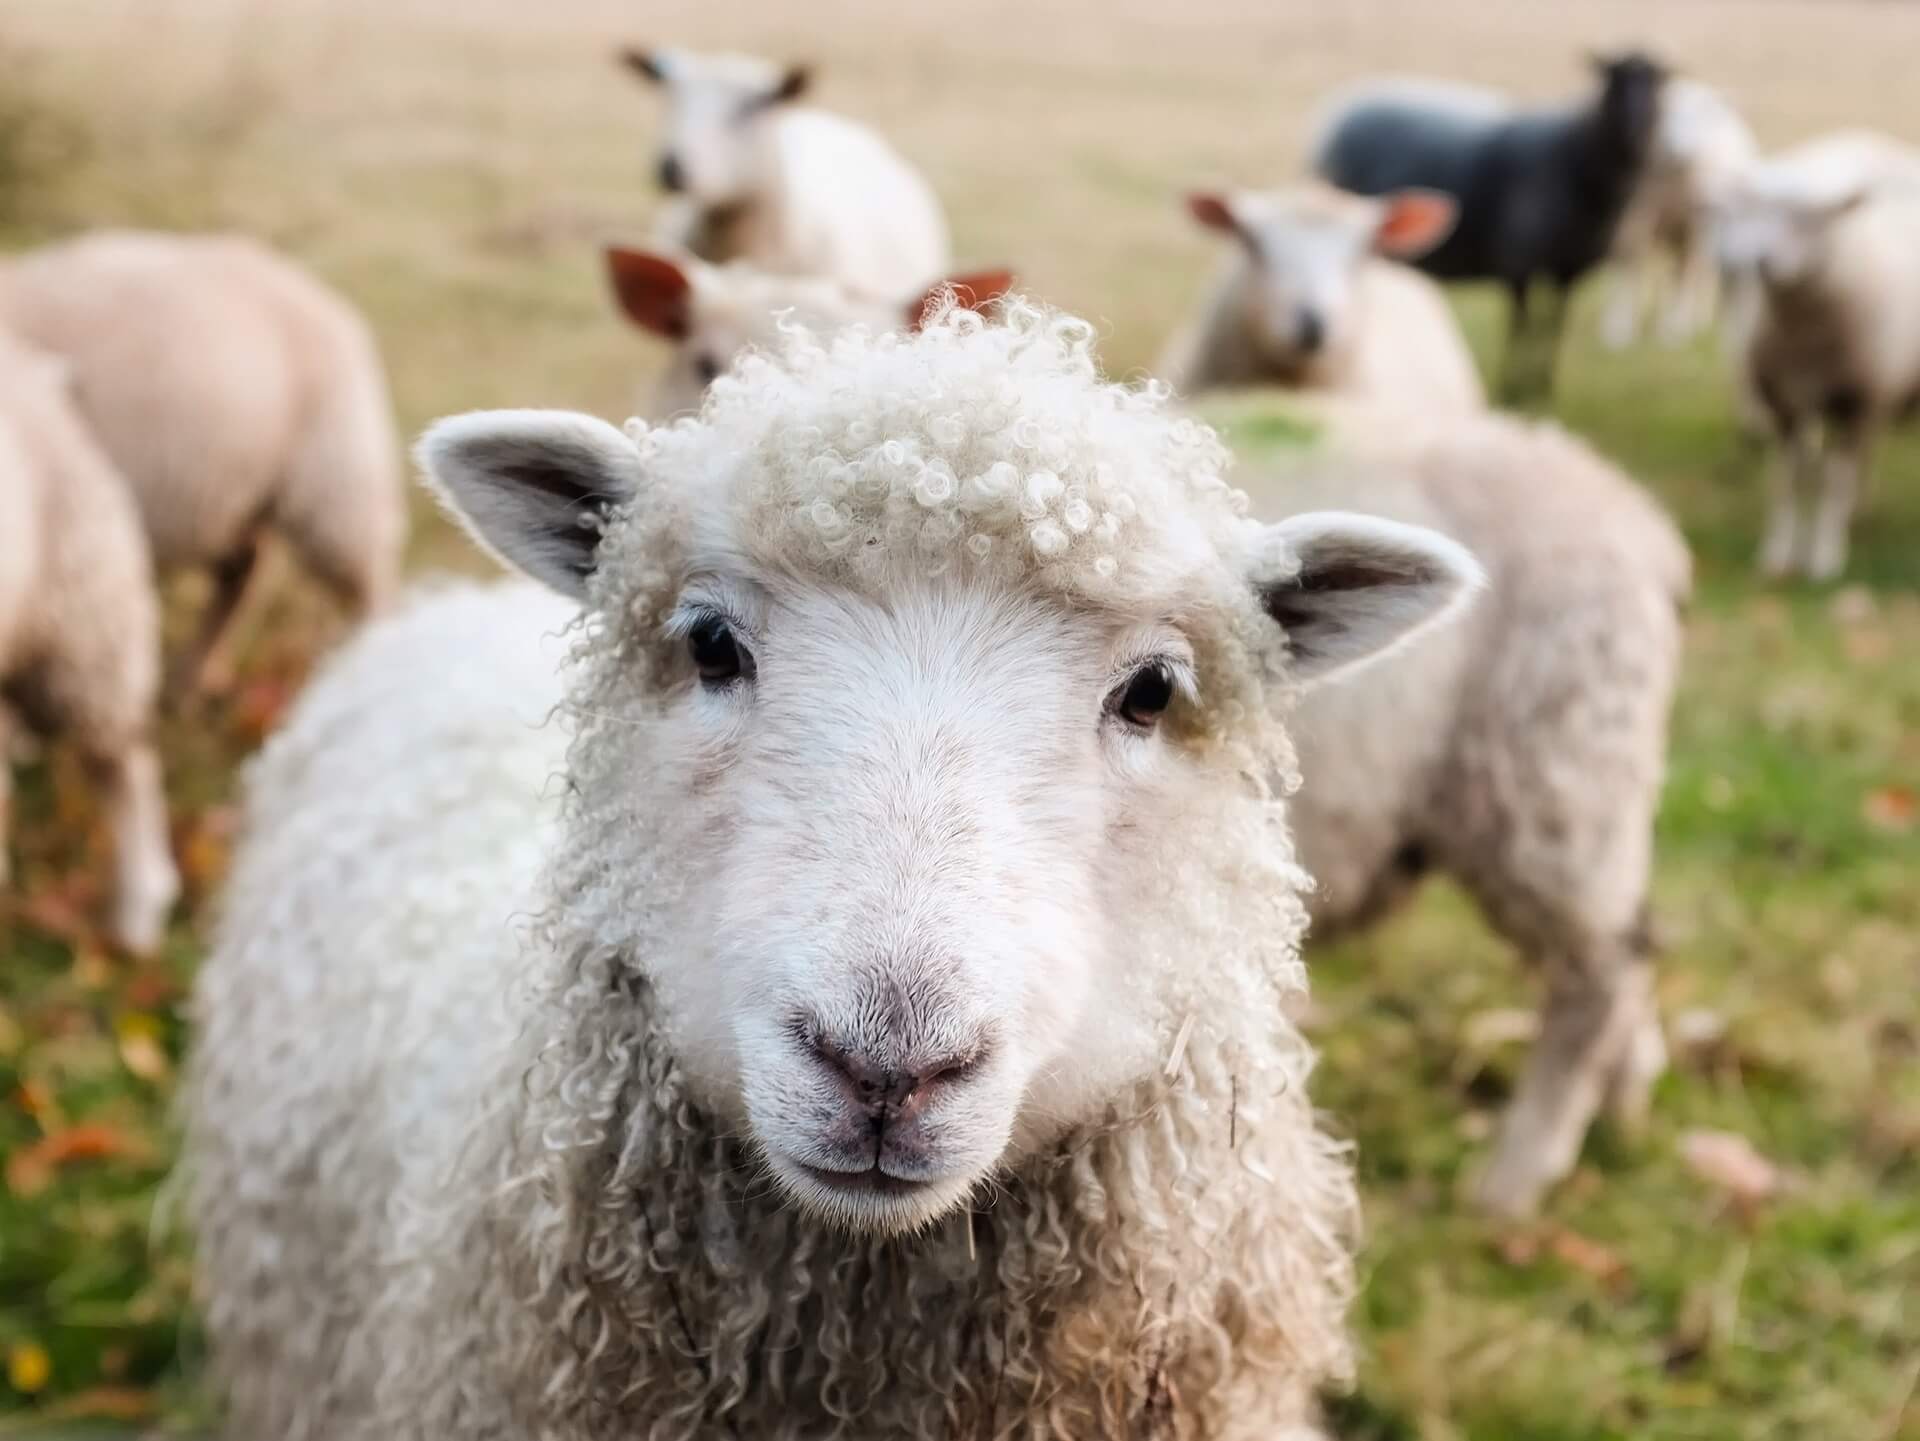 Ein Schaf schaut süß in die Kamera, dahinter weitere Schafe auf der Wiese